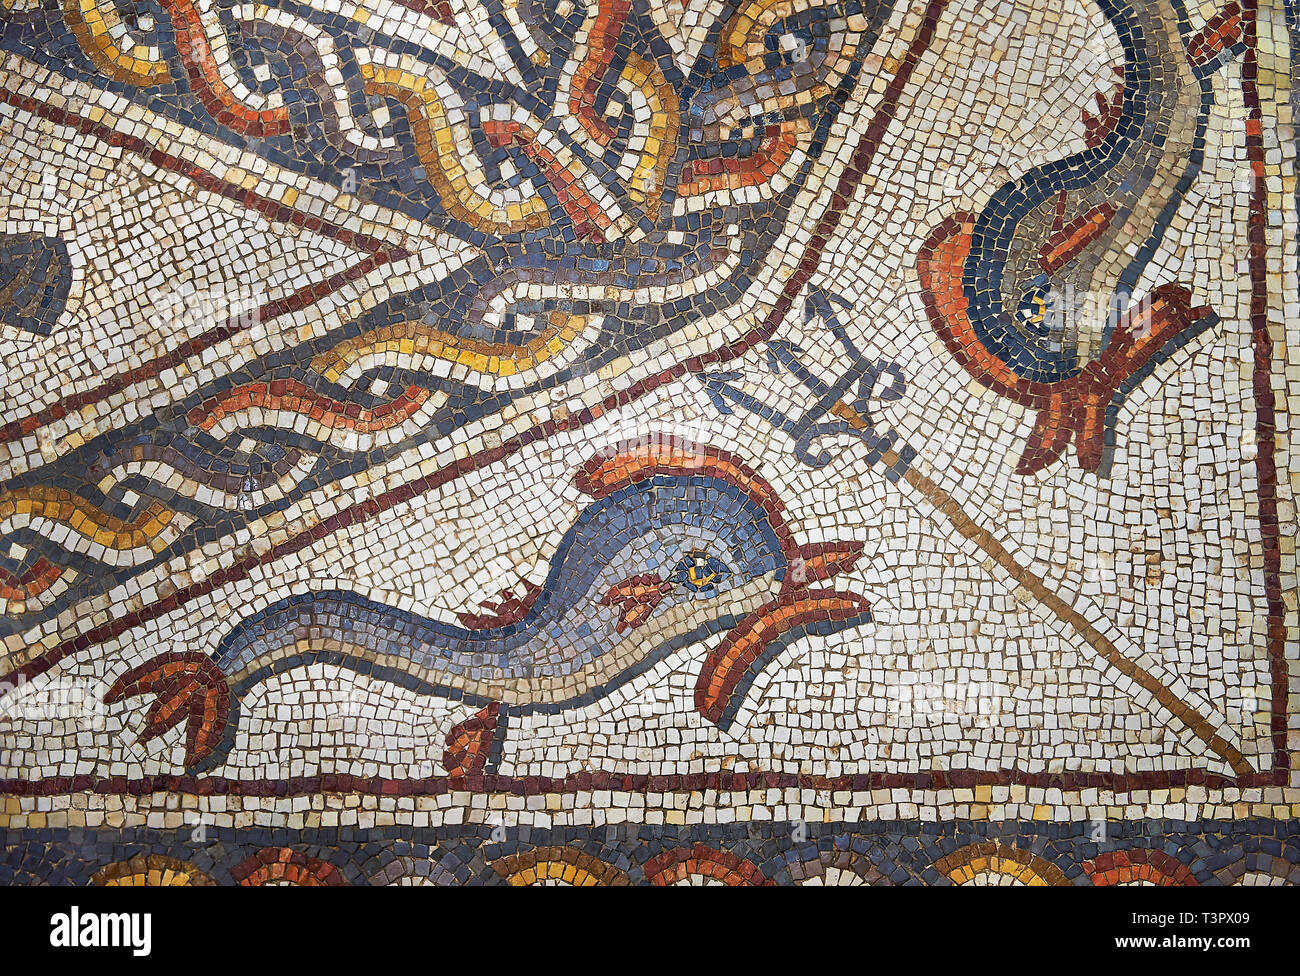 Le poisson de la 3e siècle mosaïque romaine villa étage de Lod, près de Tel Aviv, Israël. La mosaïque romaine de Lod est le plus grand et le mieux préservé mo Banque D'Images